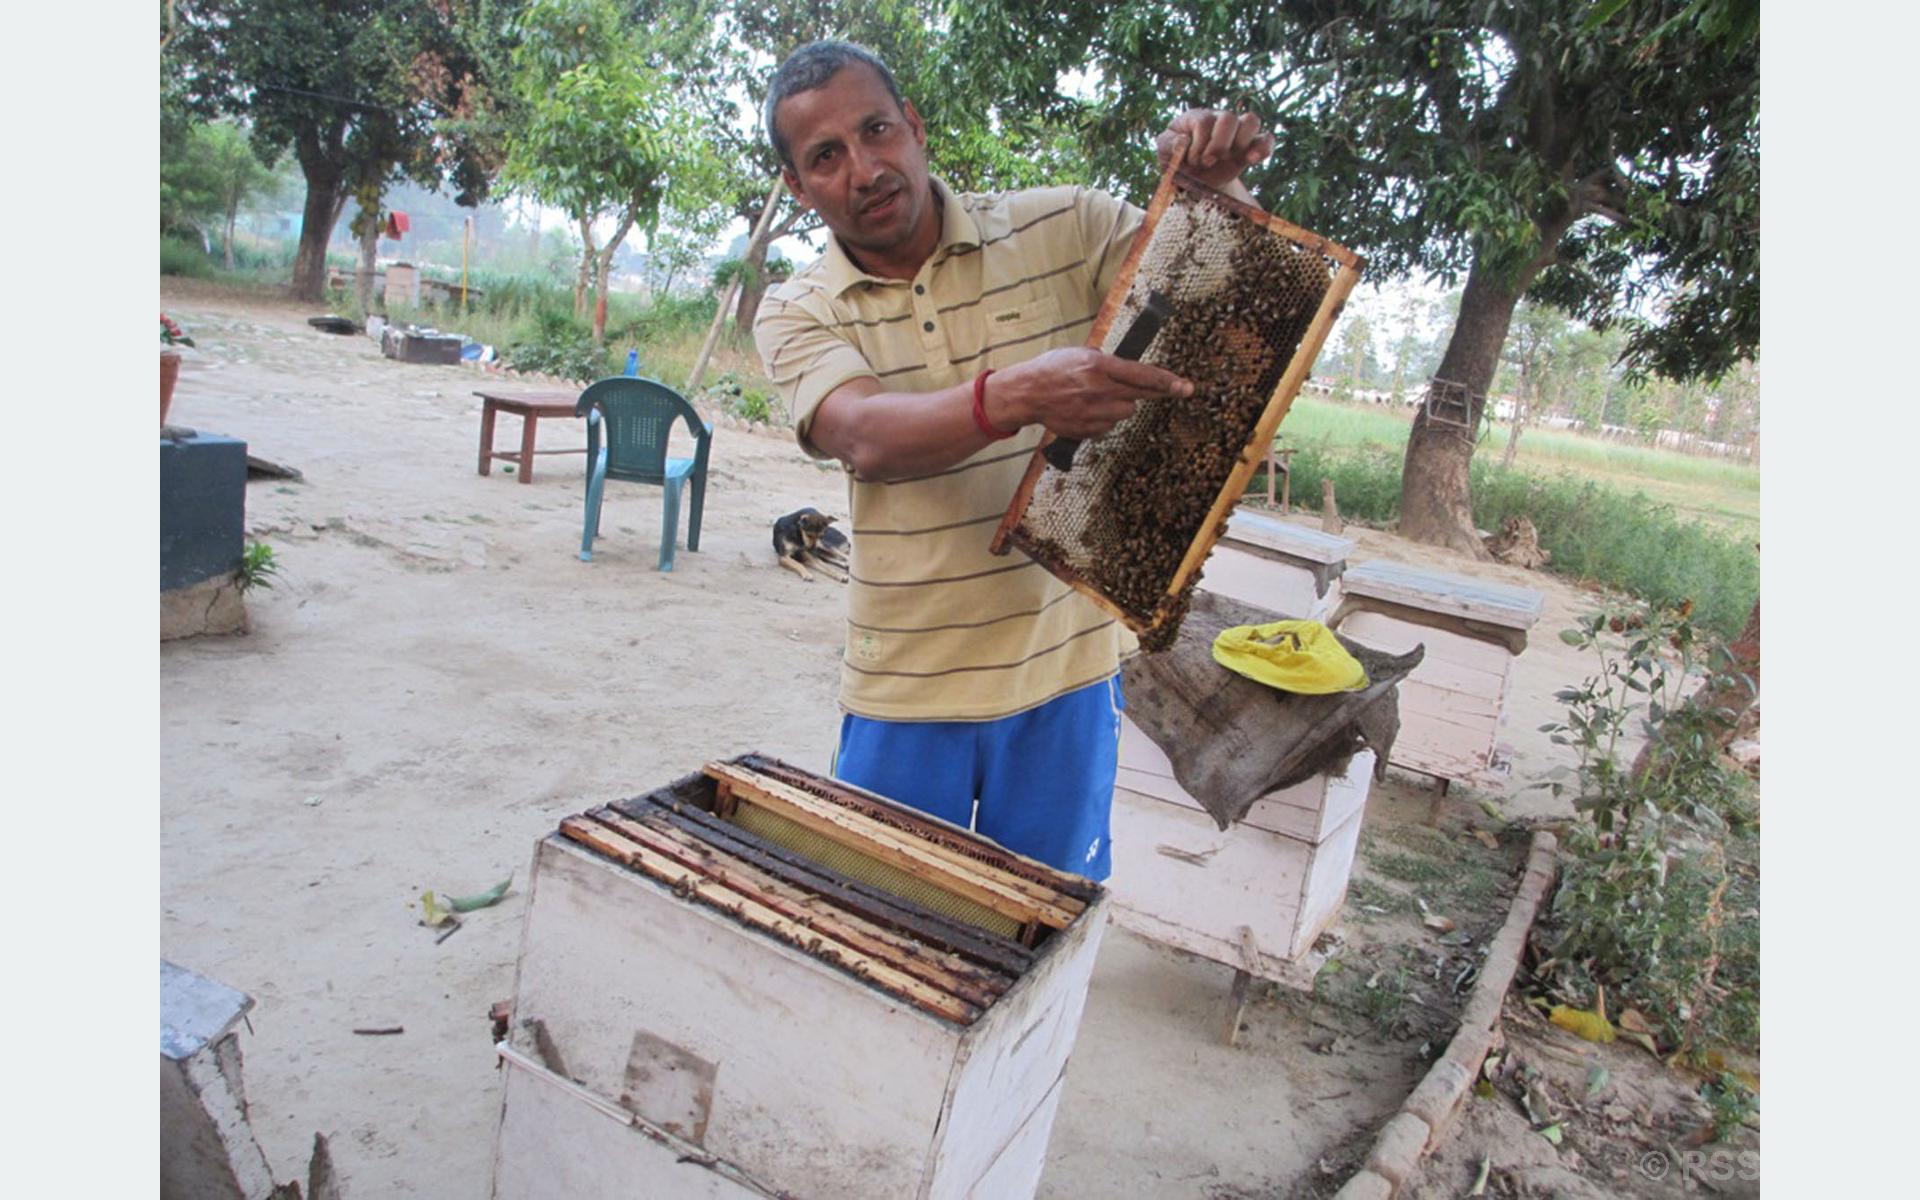 Former national kushti player turns beekeeper